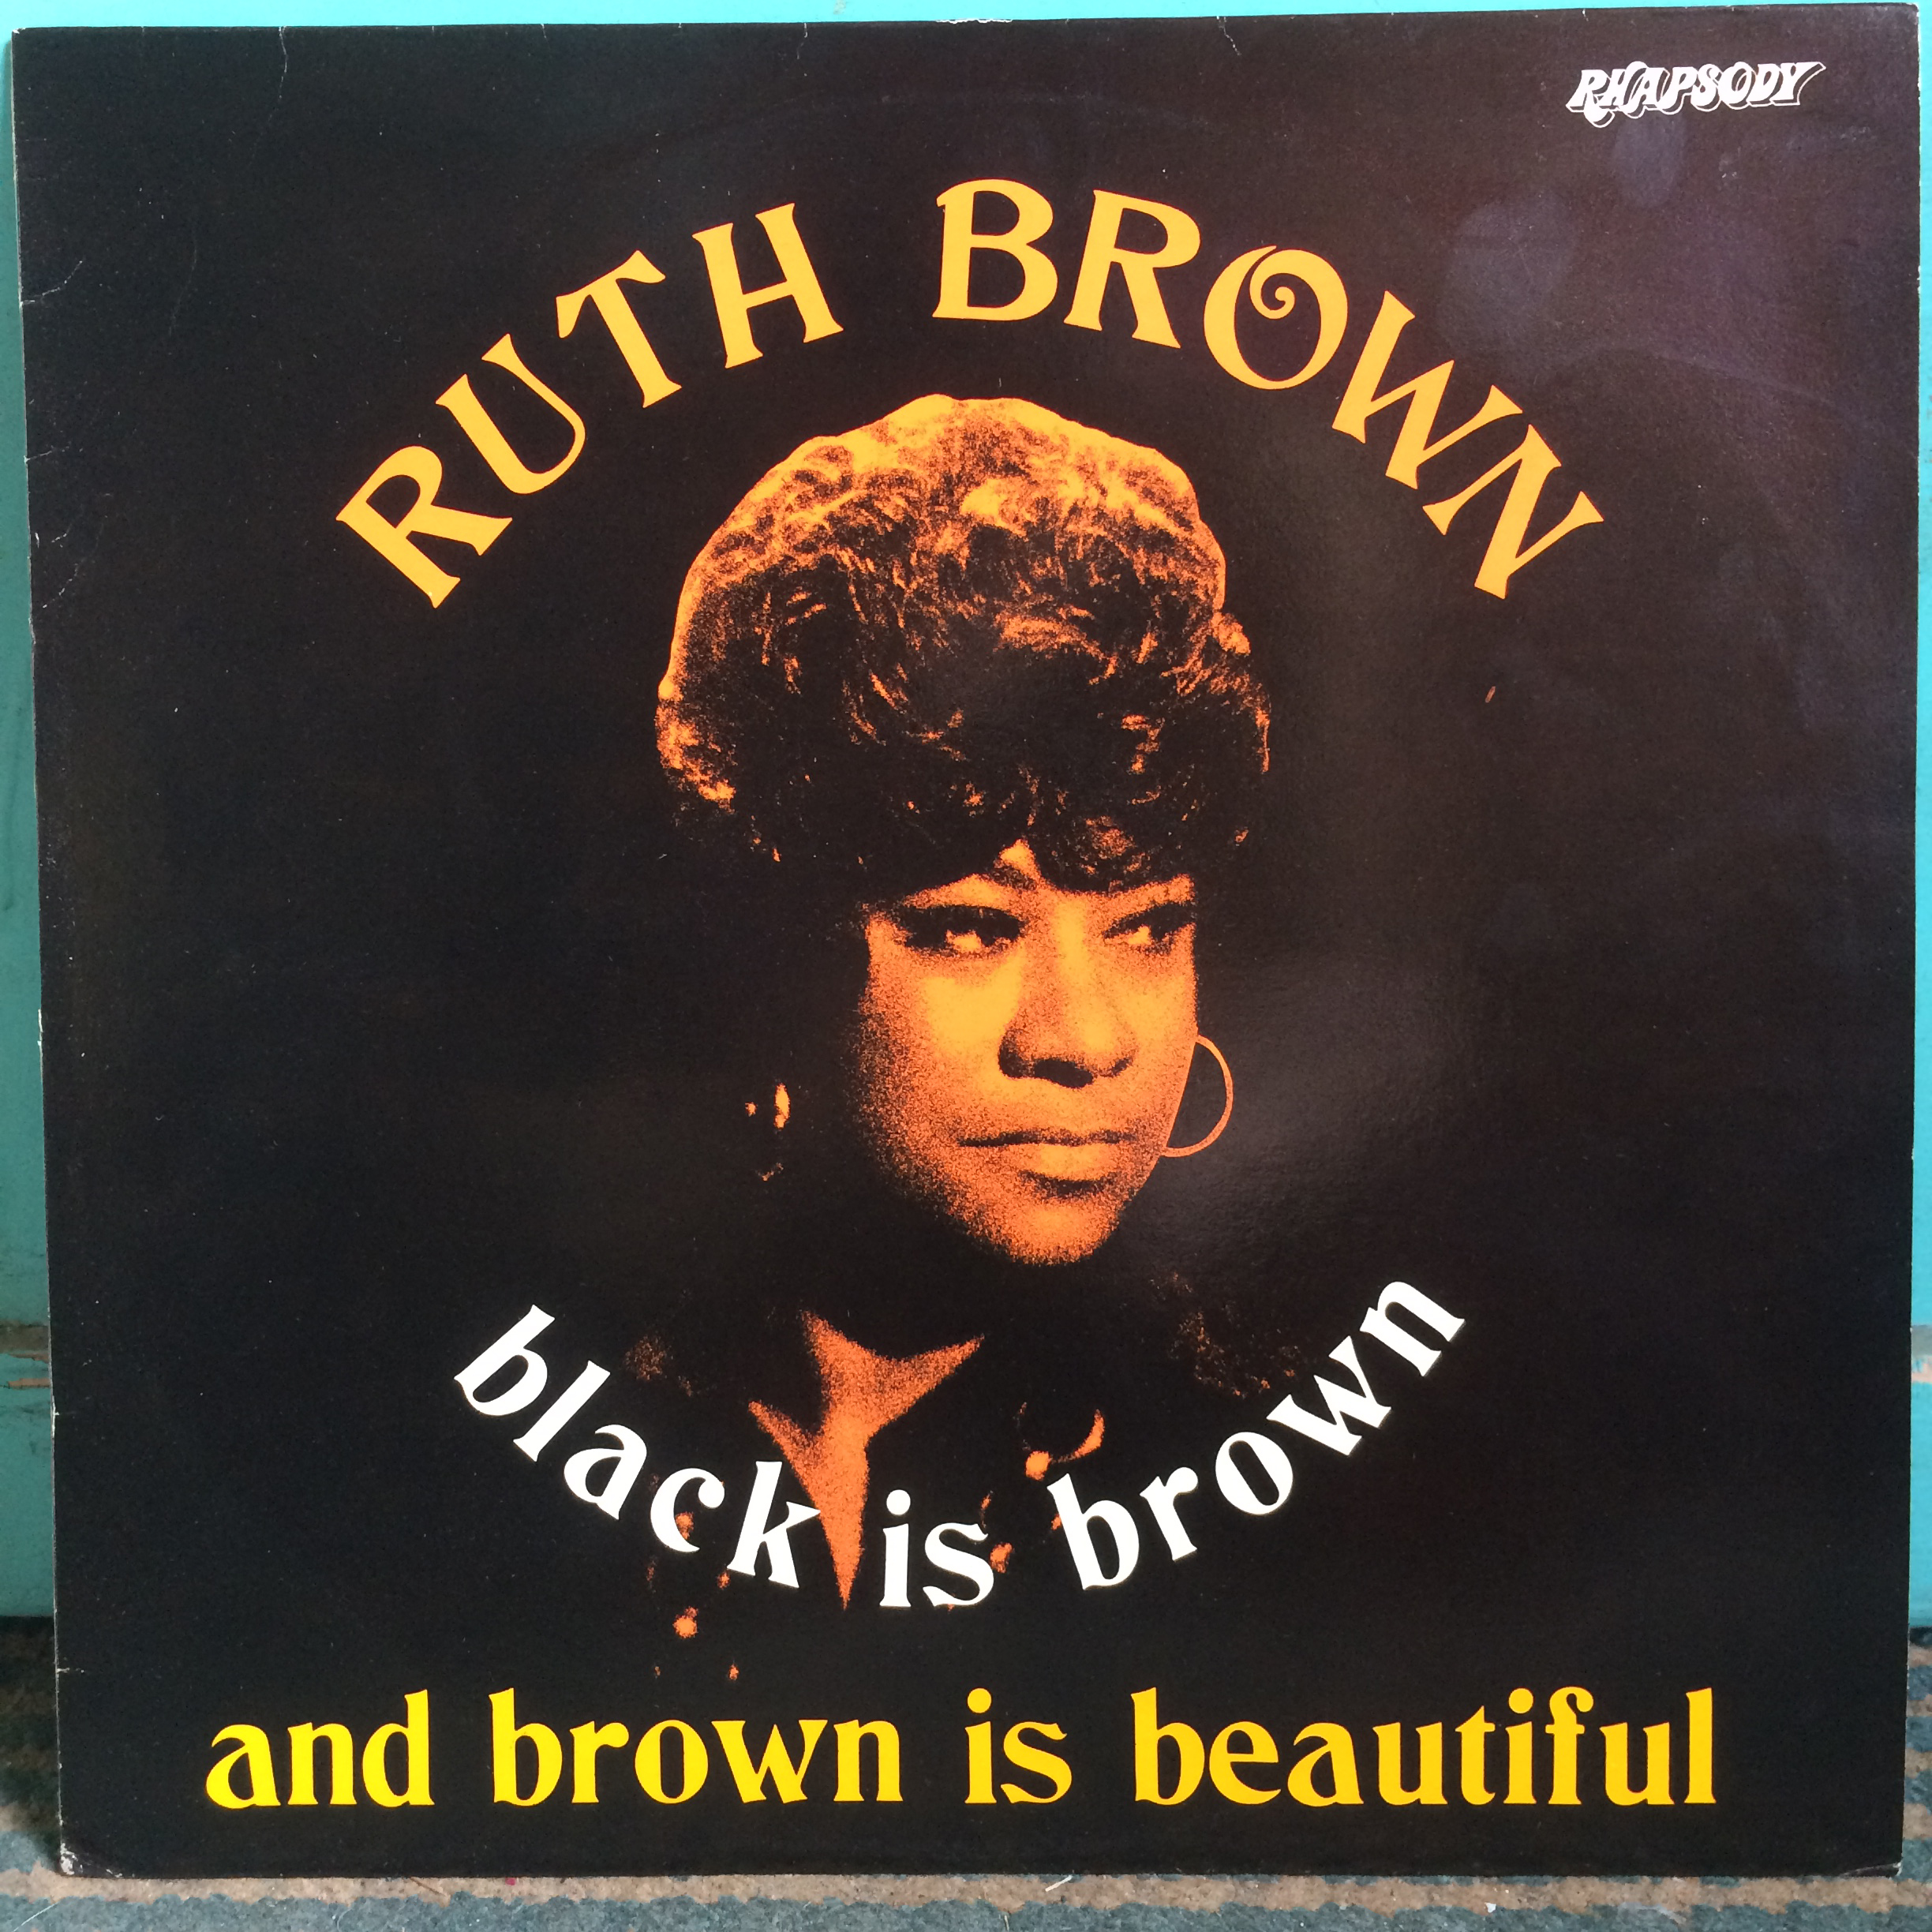 RHAP 10 Ruth Brown - Black is Brown and Brown is Beautiful